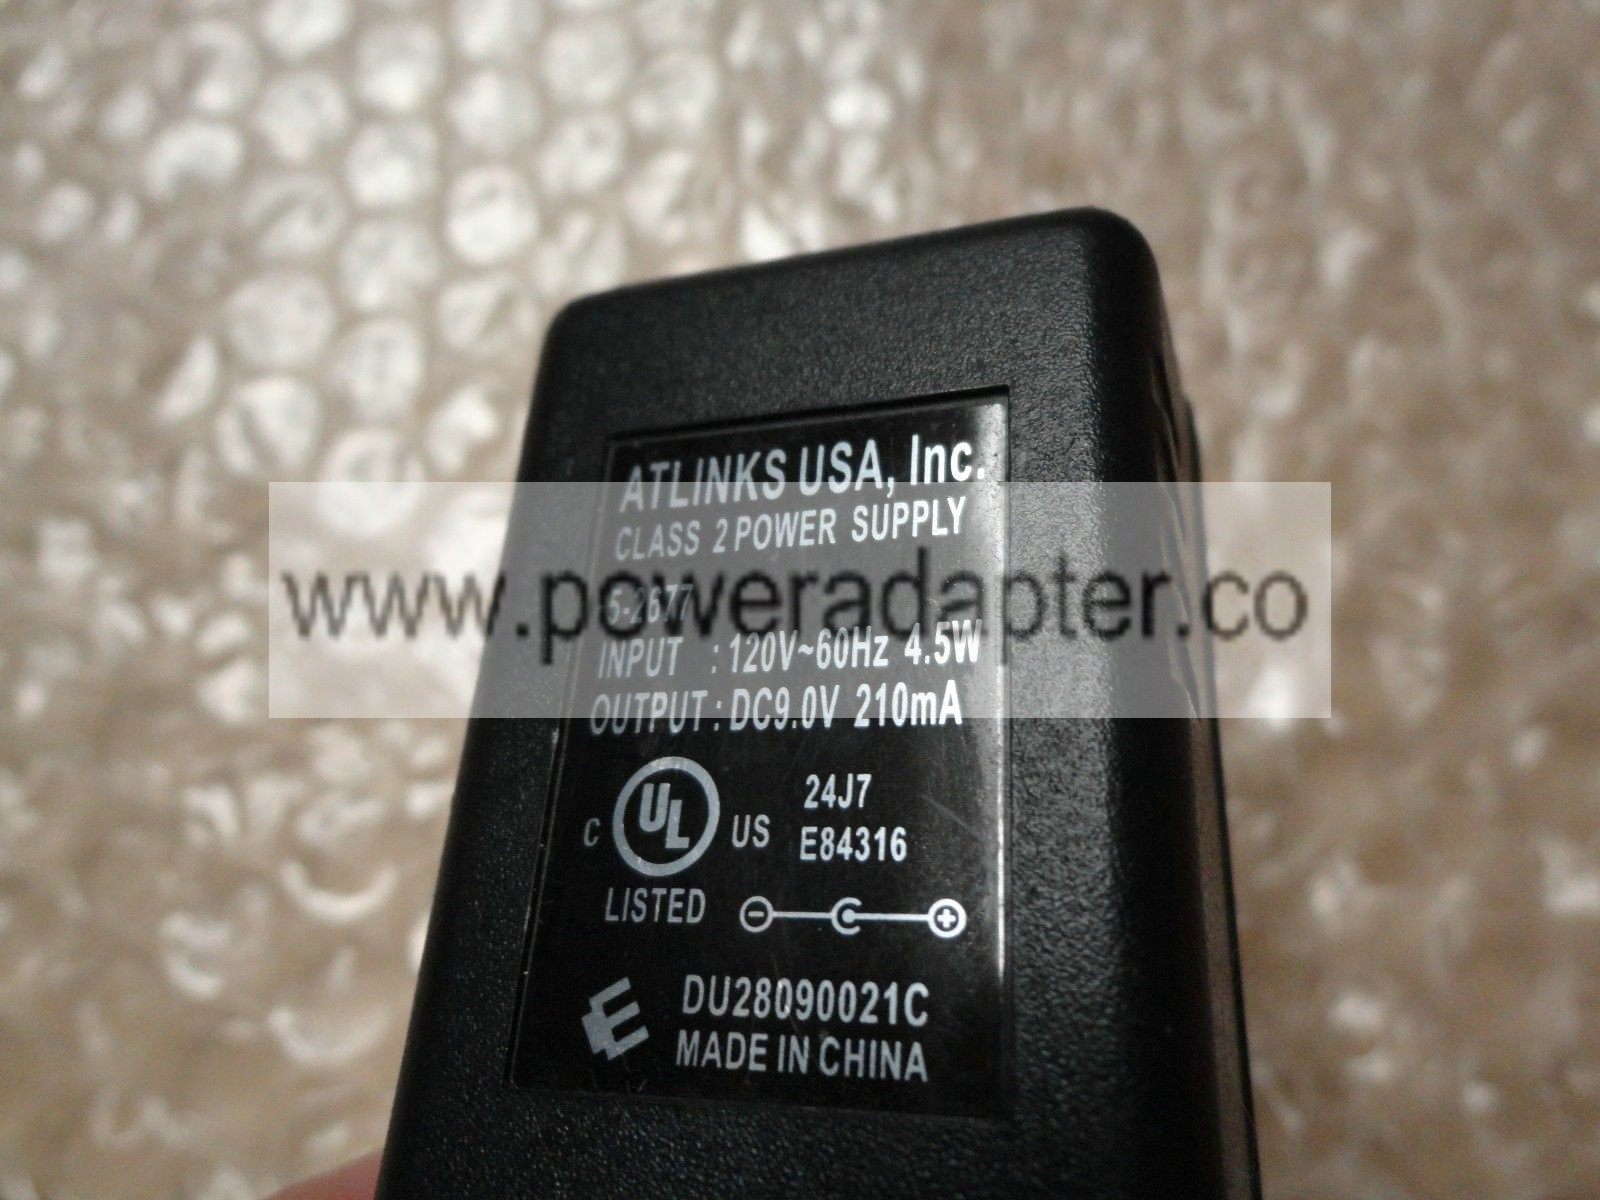 Original OEM Atlinks Class 2 AC Power Supply Adapter 5-2677 9V DC 210mA brand:ATLINKS input:120v 60hz 4.5w output:DC - Click Image to Close